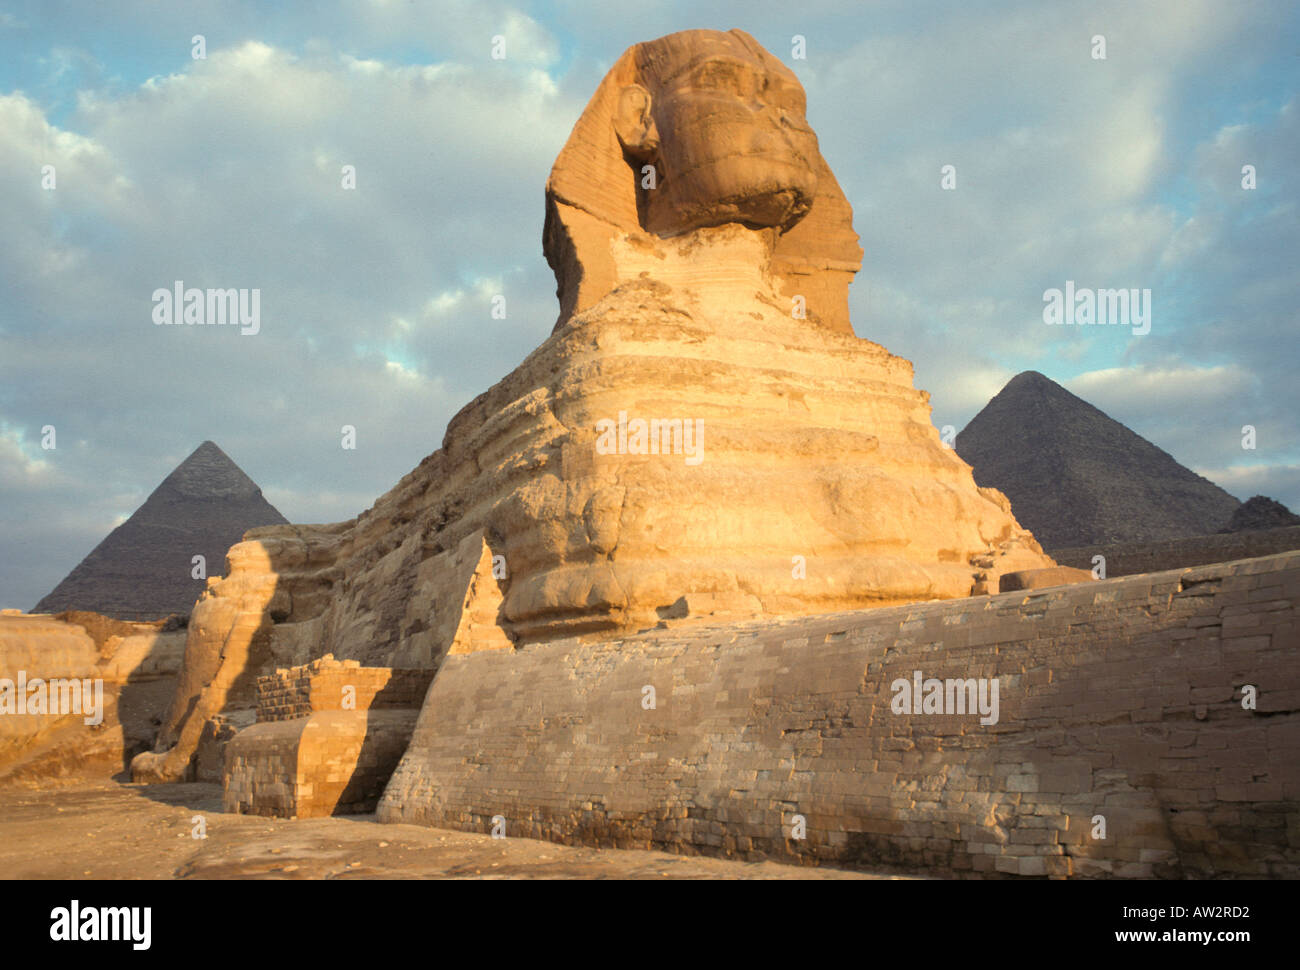 Egipto Esfinge de Giza retrato temprano en la mañana con nubes Foto de stock